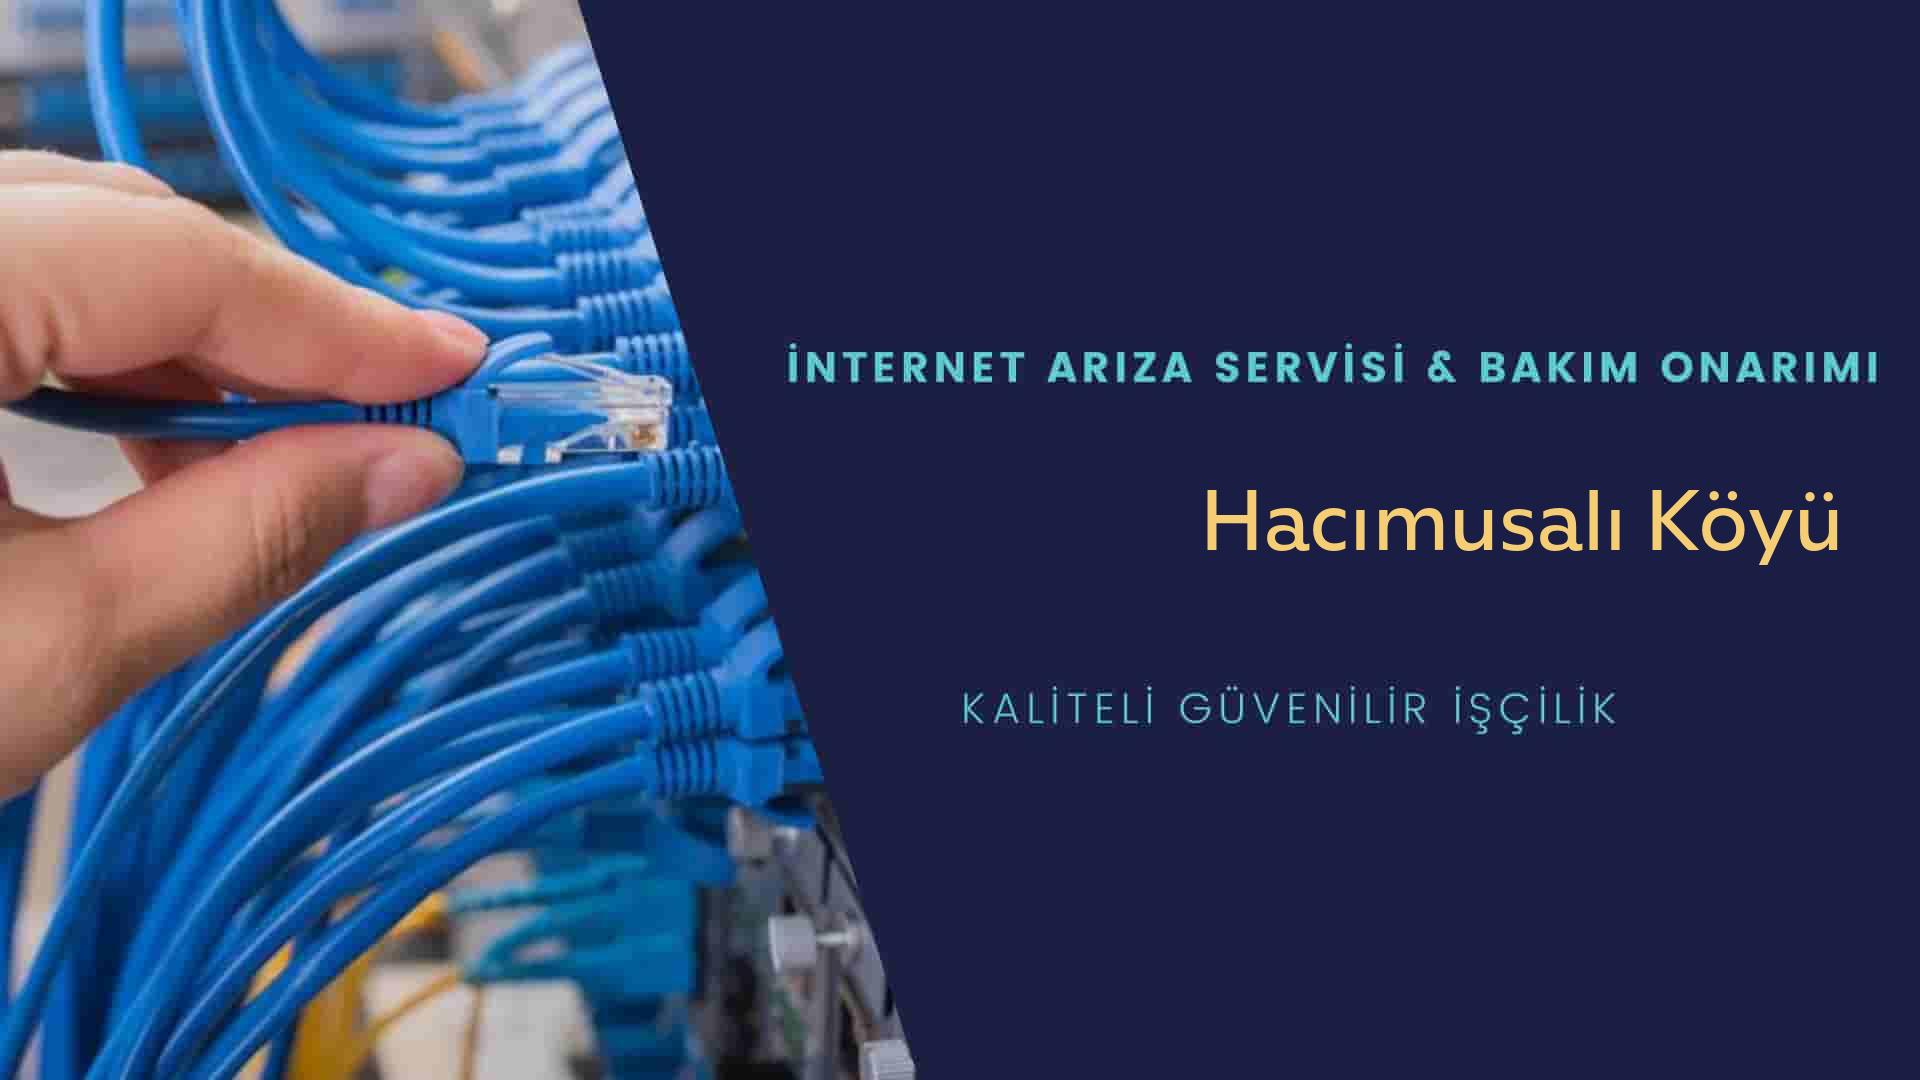 Hacımusalı Köyü internet kablosu çekimi yapan yerler veya elektrikçiler mi? arıyorsunuz doğru yerdesiniz o zaman sizlere 7/24 yardımcı olacak profesyonel ustalarımız bir telefon kadar yakındır size.